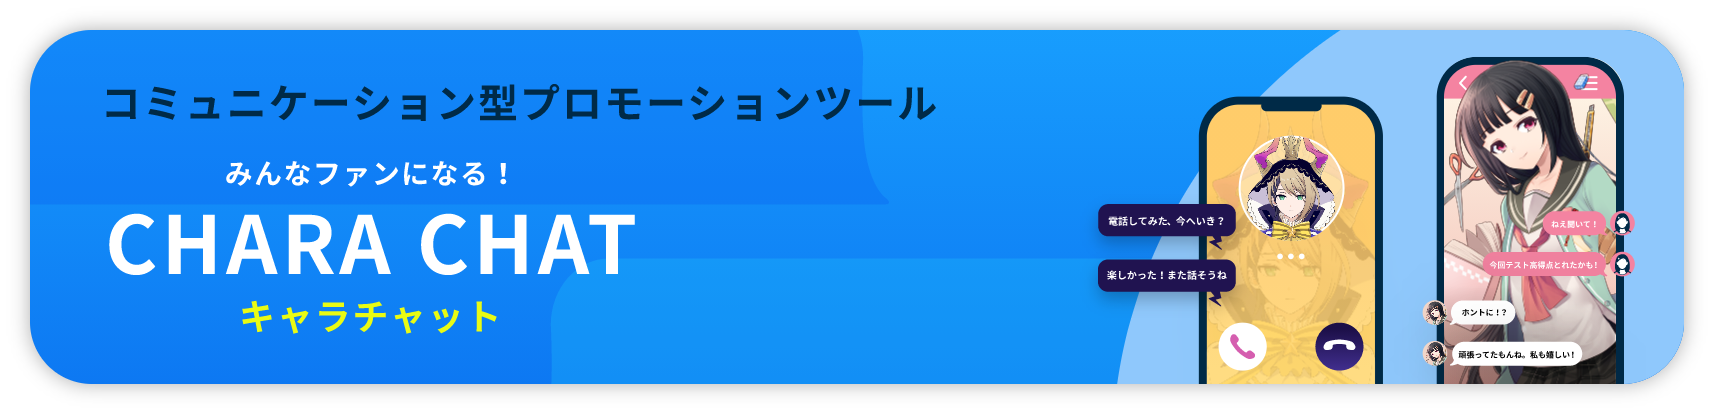 アニメ「みるタイツ」原作のパズルゲーム『あそぶタイツ』がリリース!